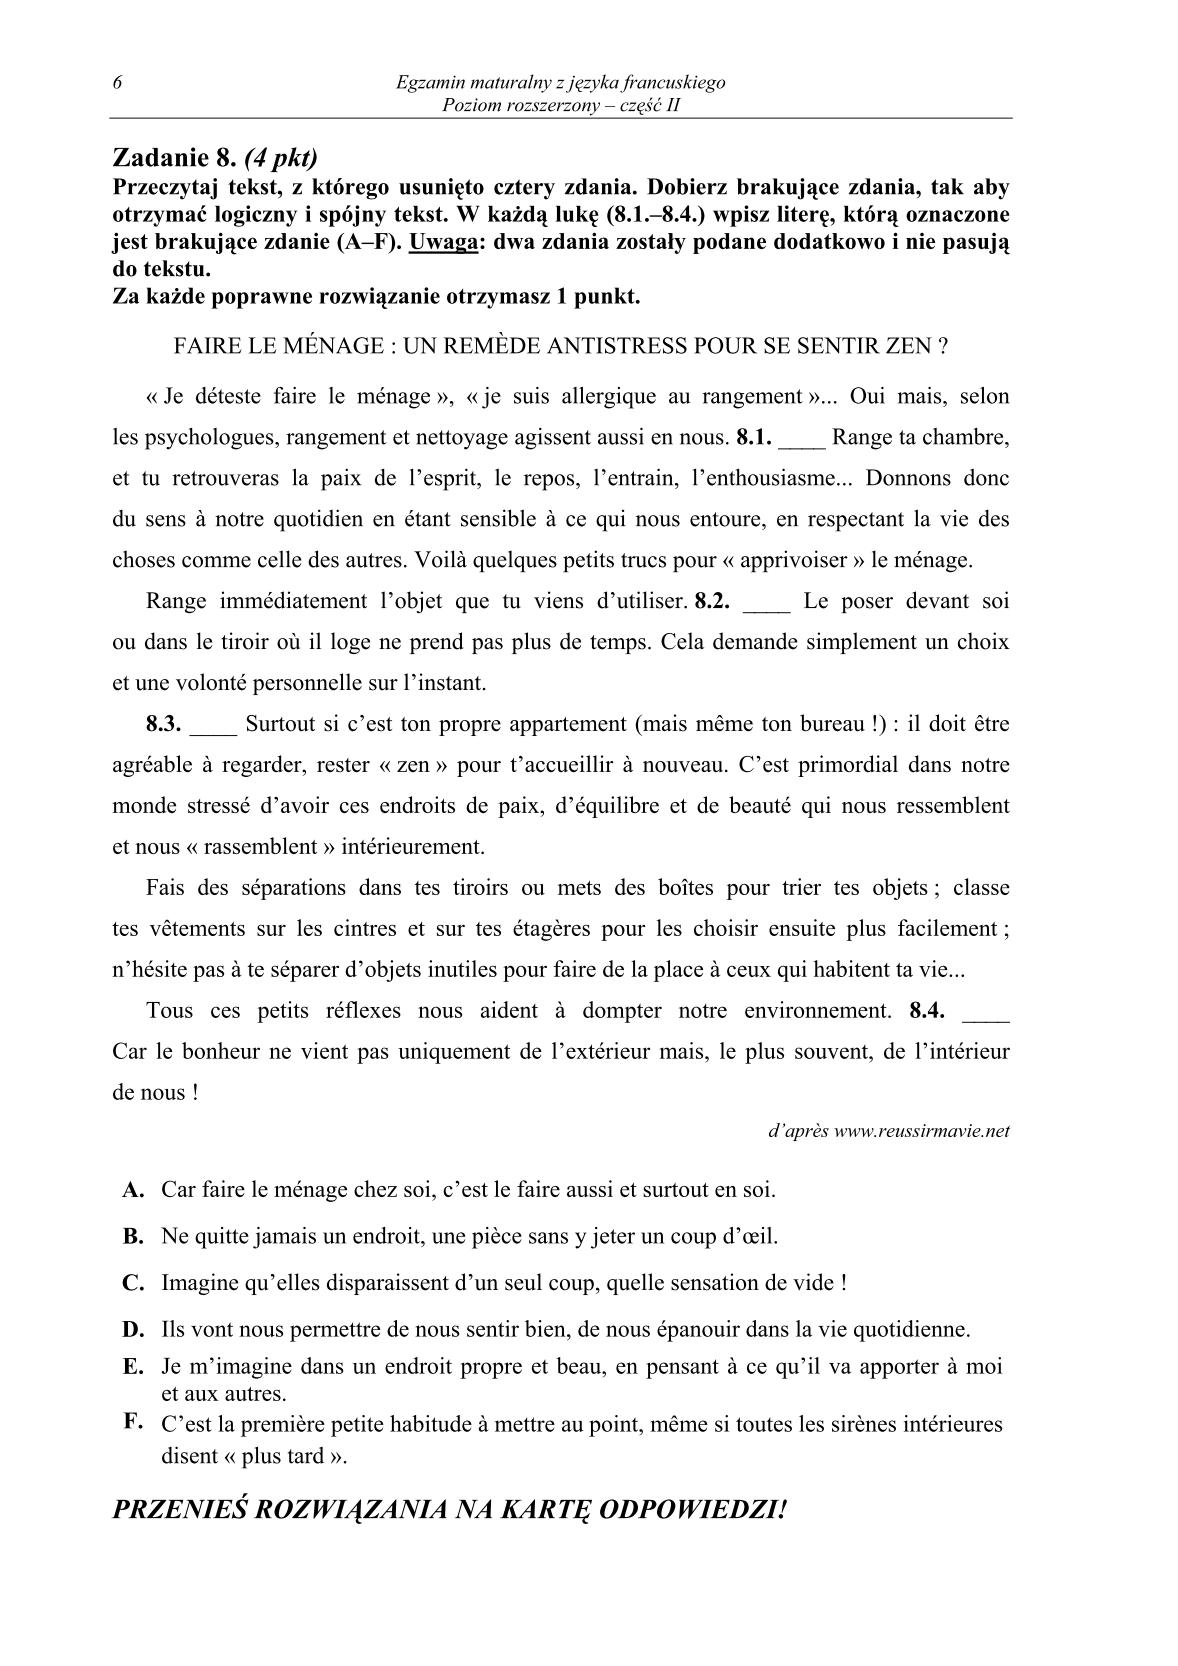 pytania-jezyk-francuski-poziom-rozszerzony-czesc-II-matura-2014-str.6